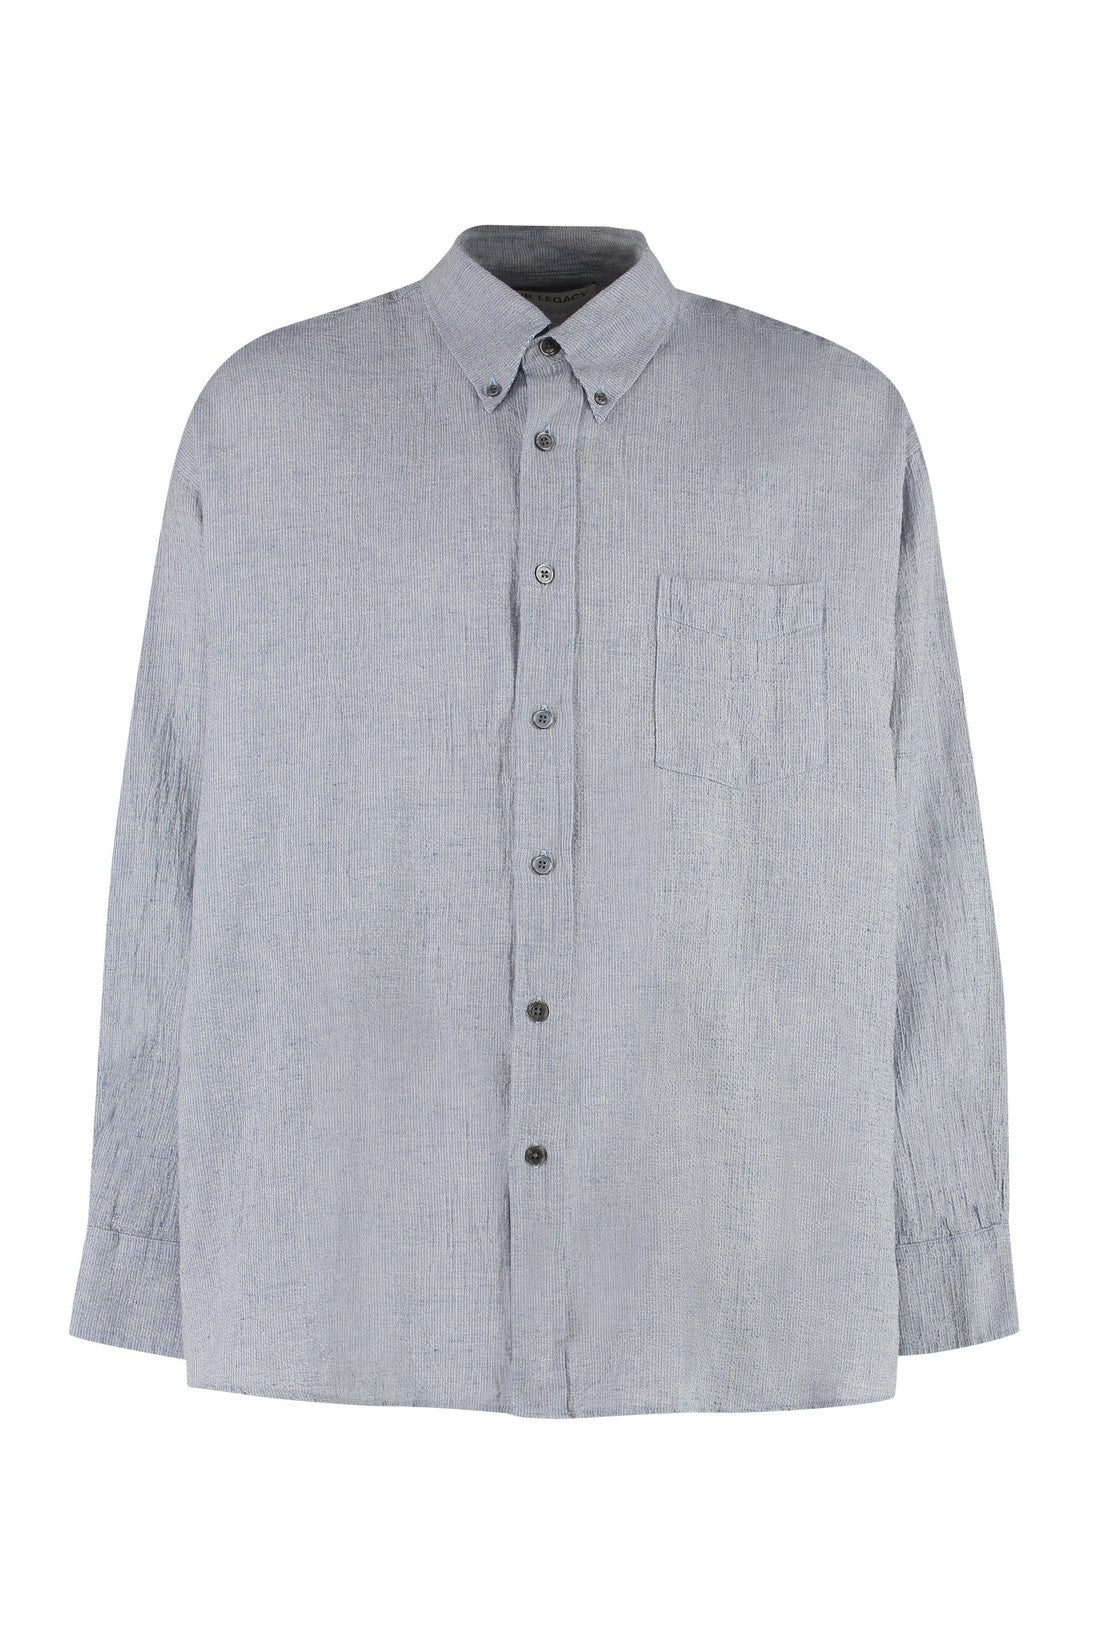 Our Legacy-OUTLET-SALE-Long sleeve cotton blend shirt-ARCHIVIST